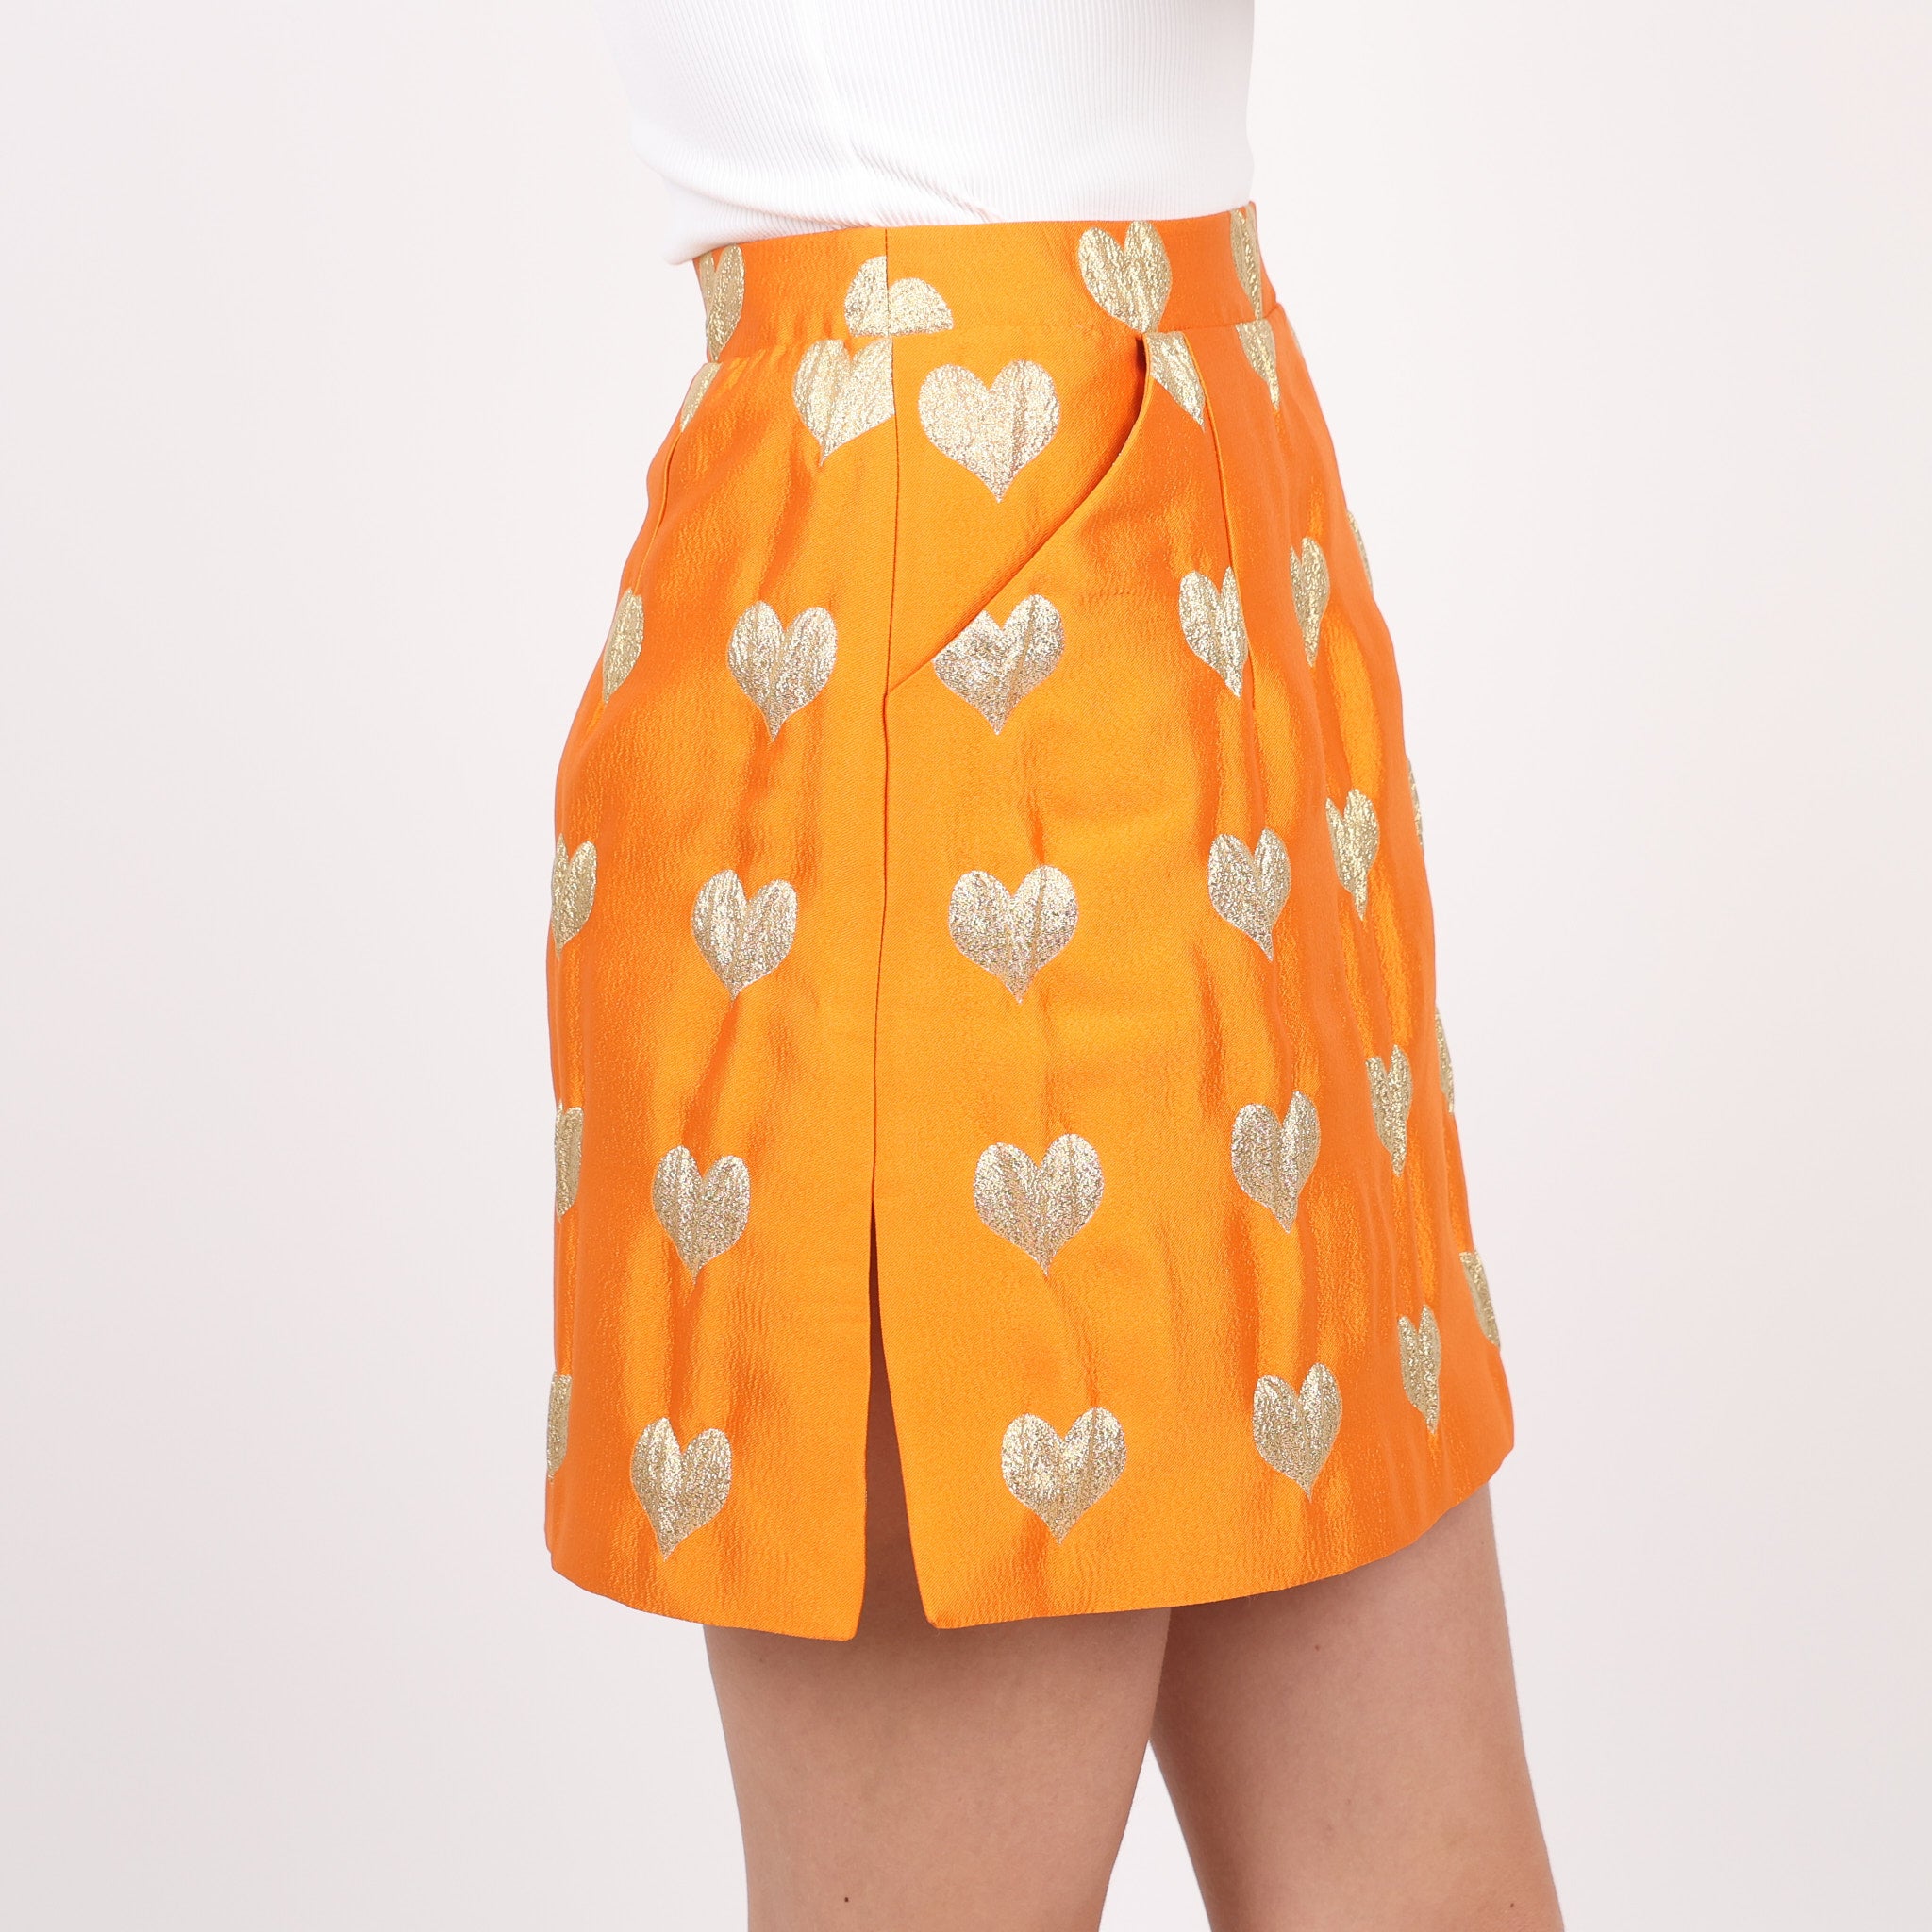 Skirt, UK Size 6